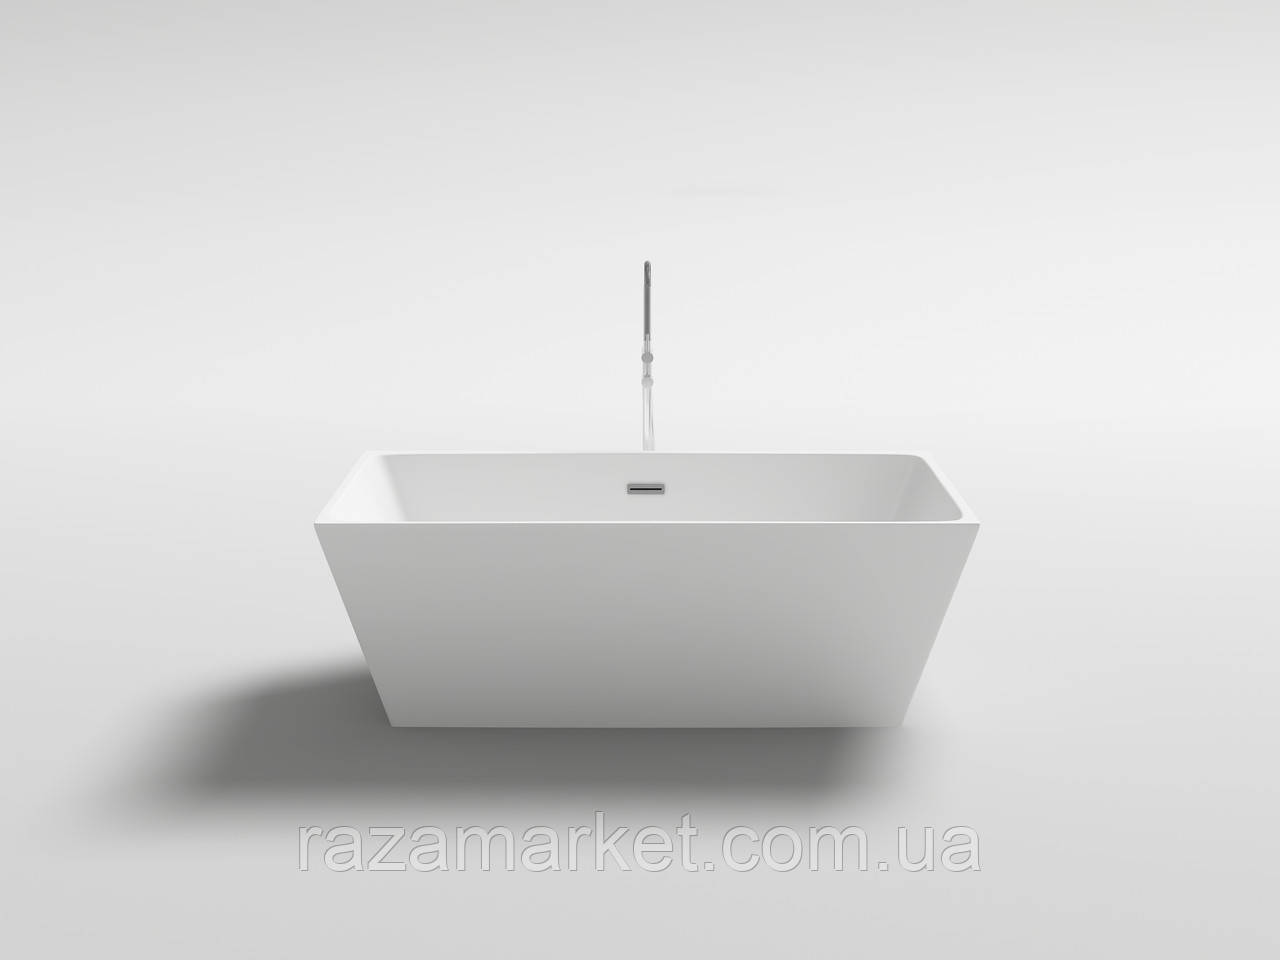 

Ванна отдельностоящая BRONE White Mone акриловая 160*80*58cm, Белый